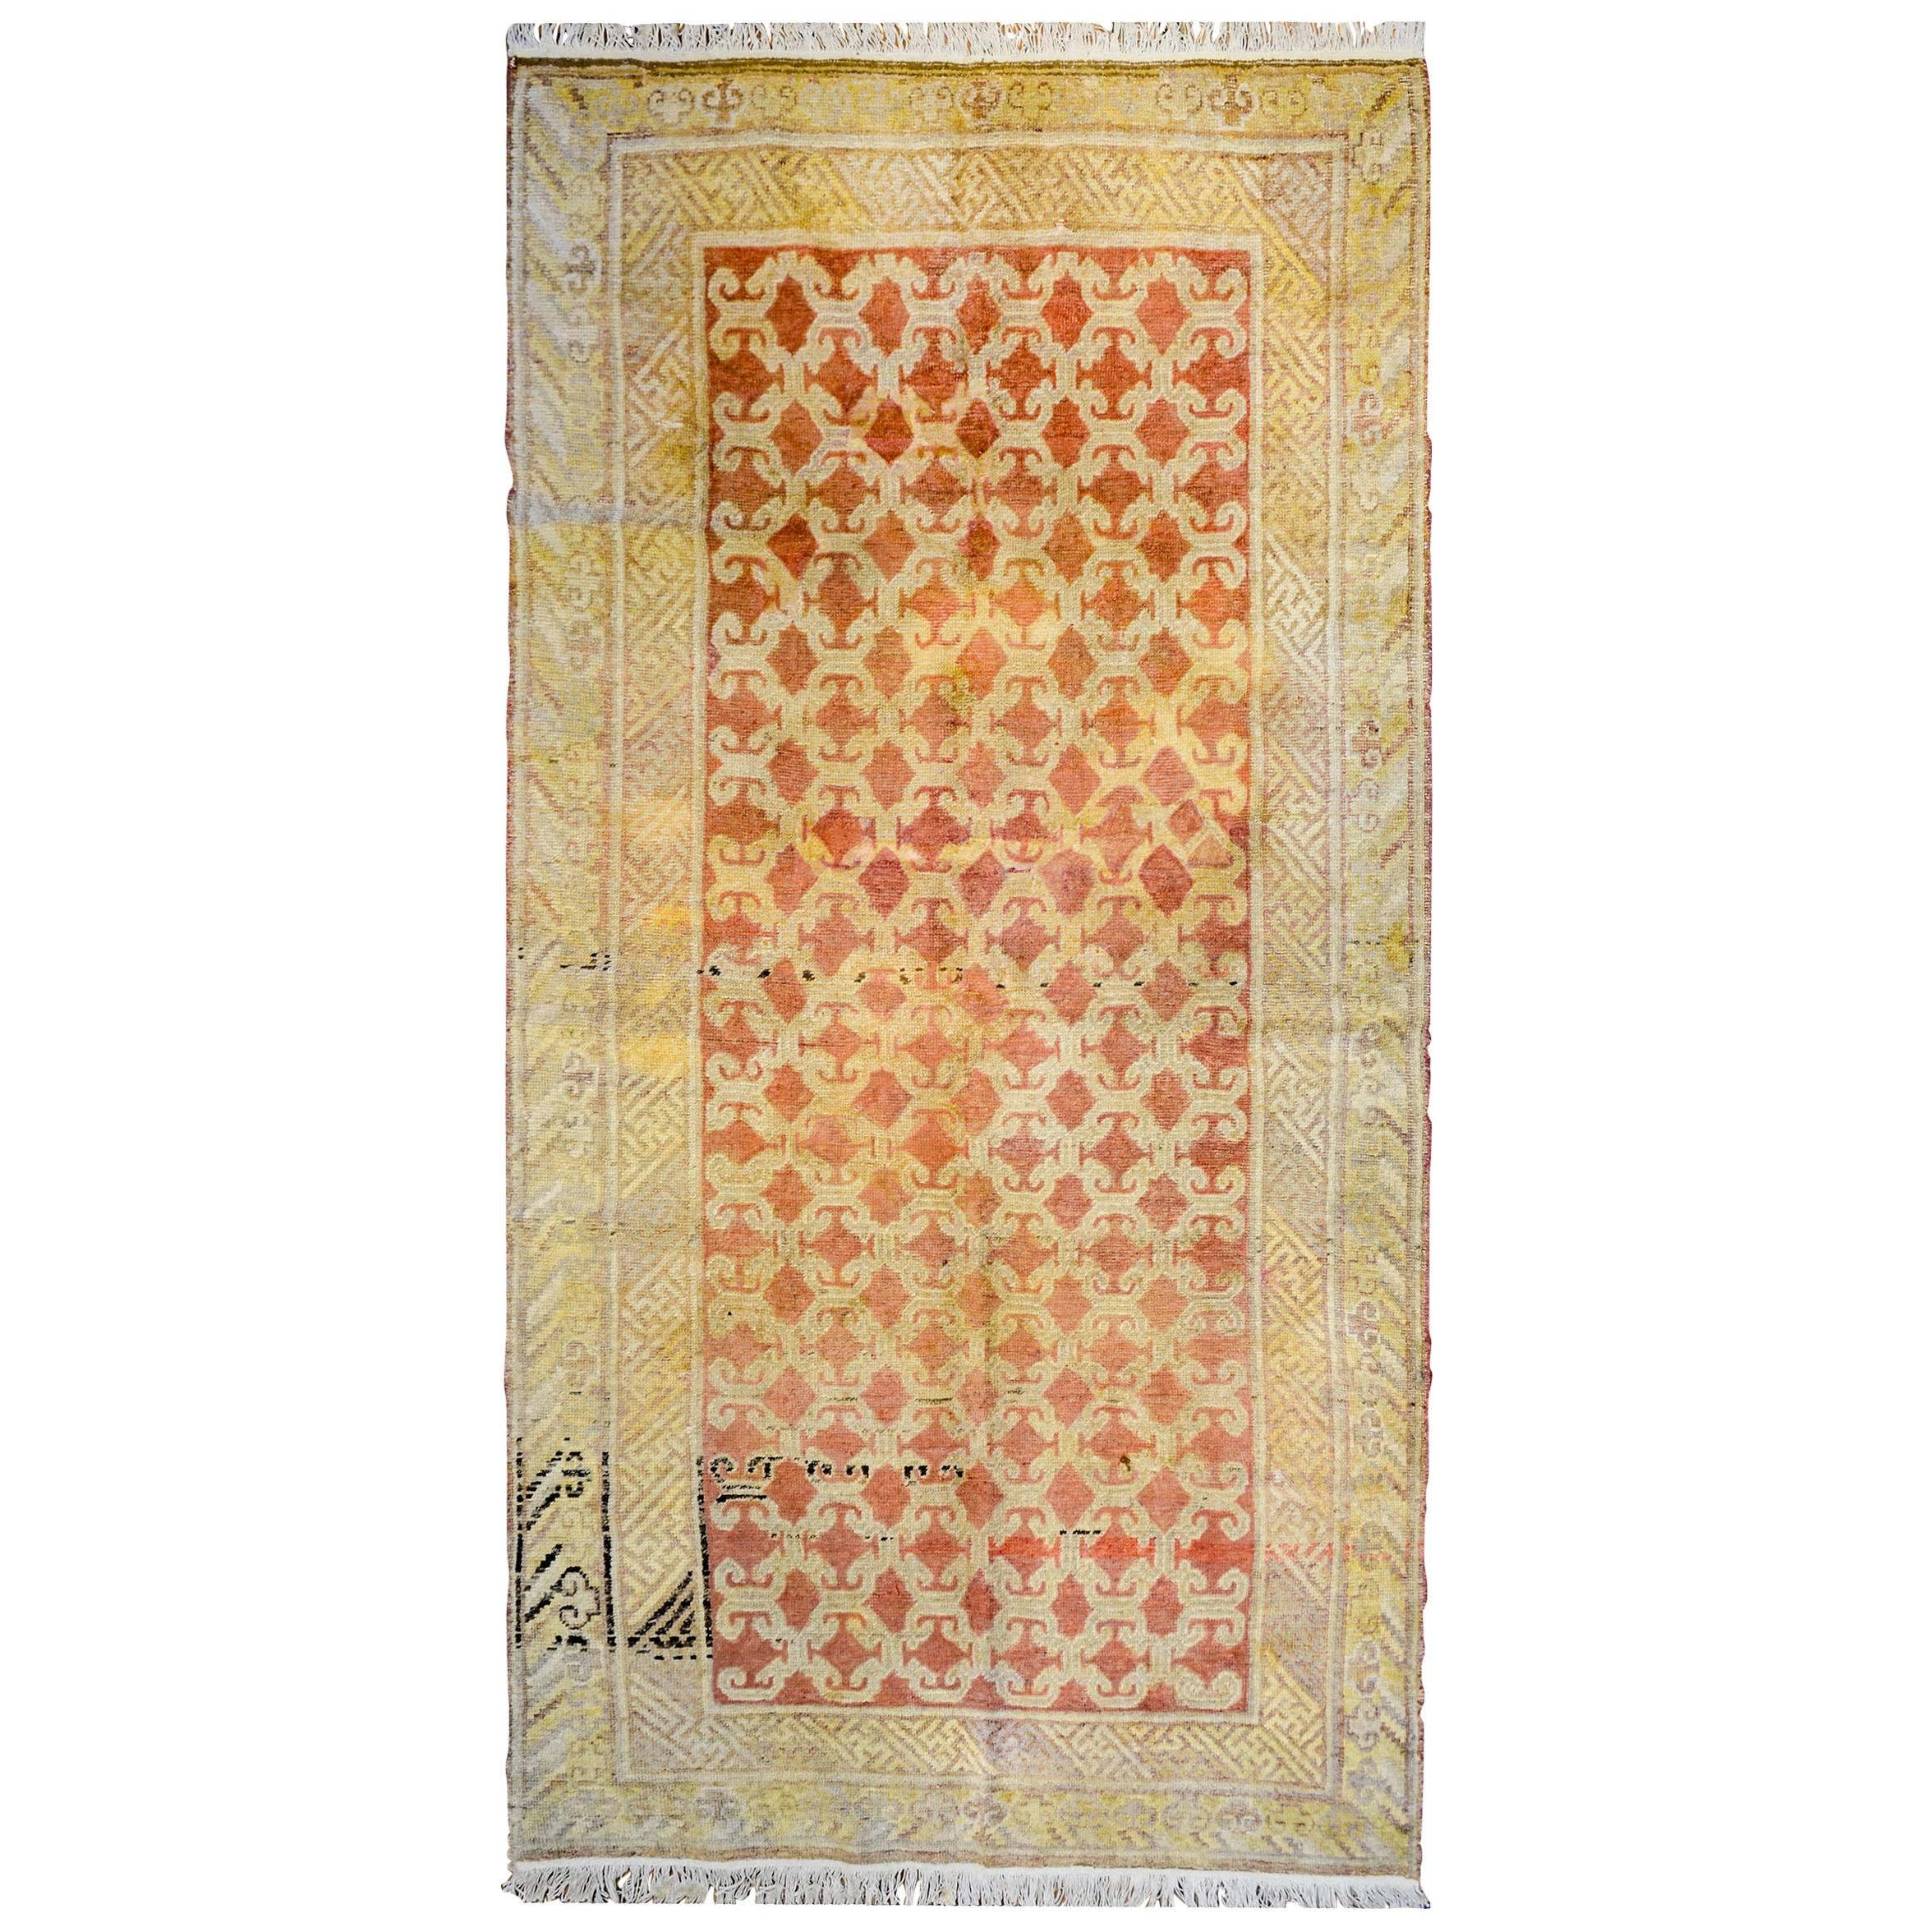 Khotan-Teppich aus dem frühen 20. Jahrhundert, ungewöhnlich